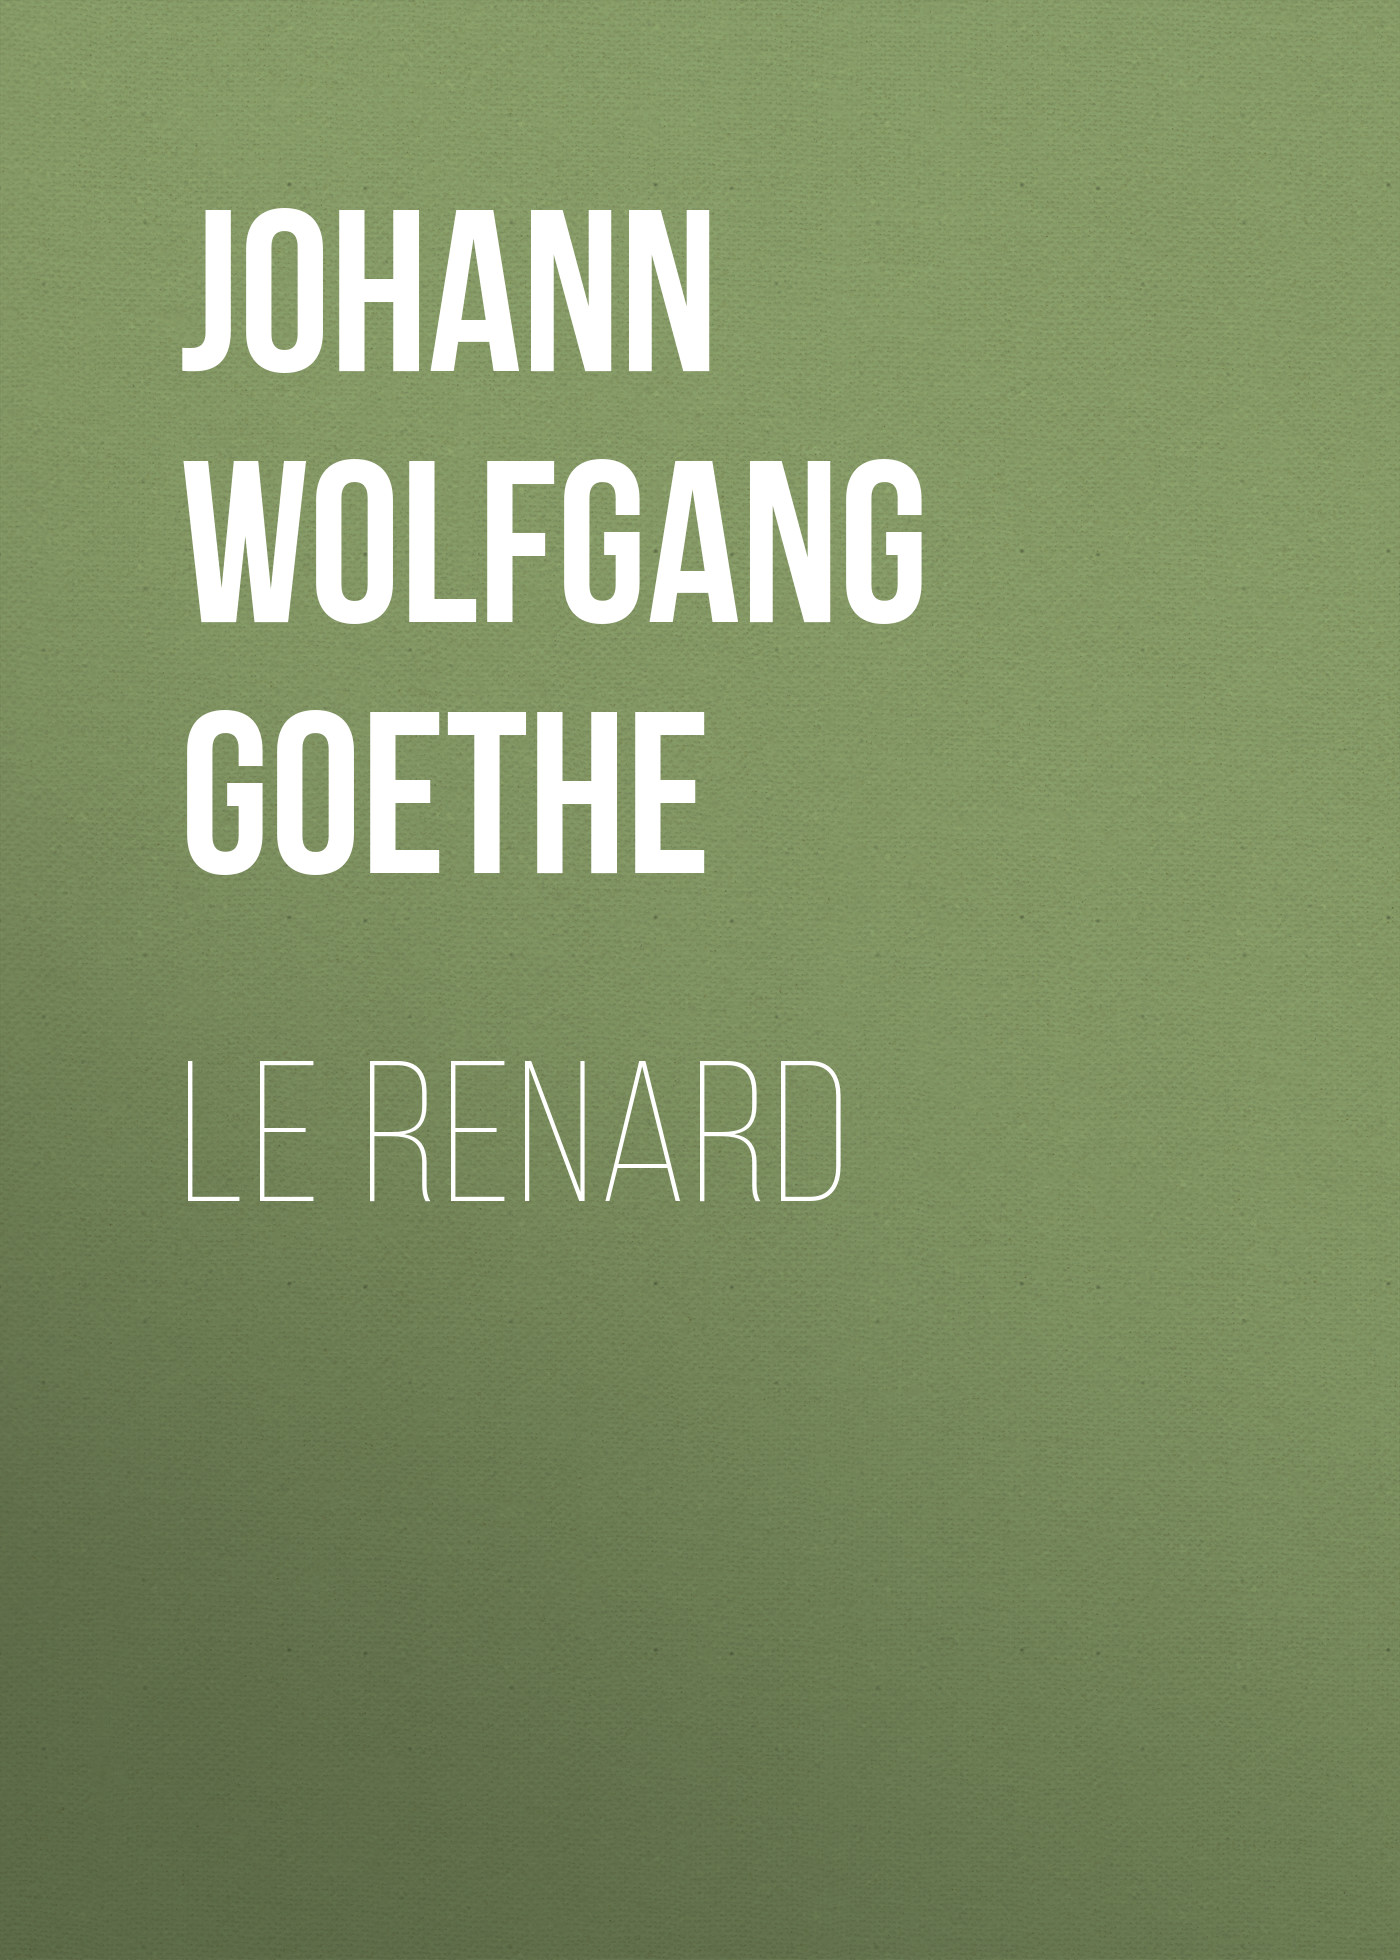 Книга Le renard из серии , созданная Johann von Goethe, может относится к жанру Зарубежная старинная литература, Зарубежная классика. Стоимость электронной книги Le renard с идентификатором 25202799 составляет 0 руб.